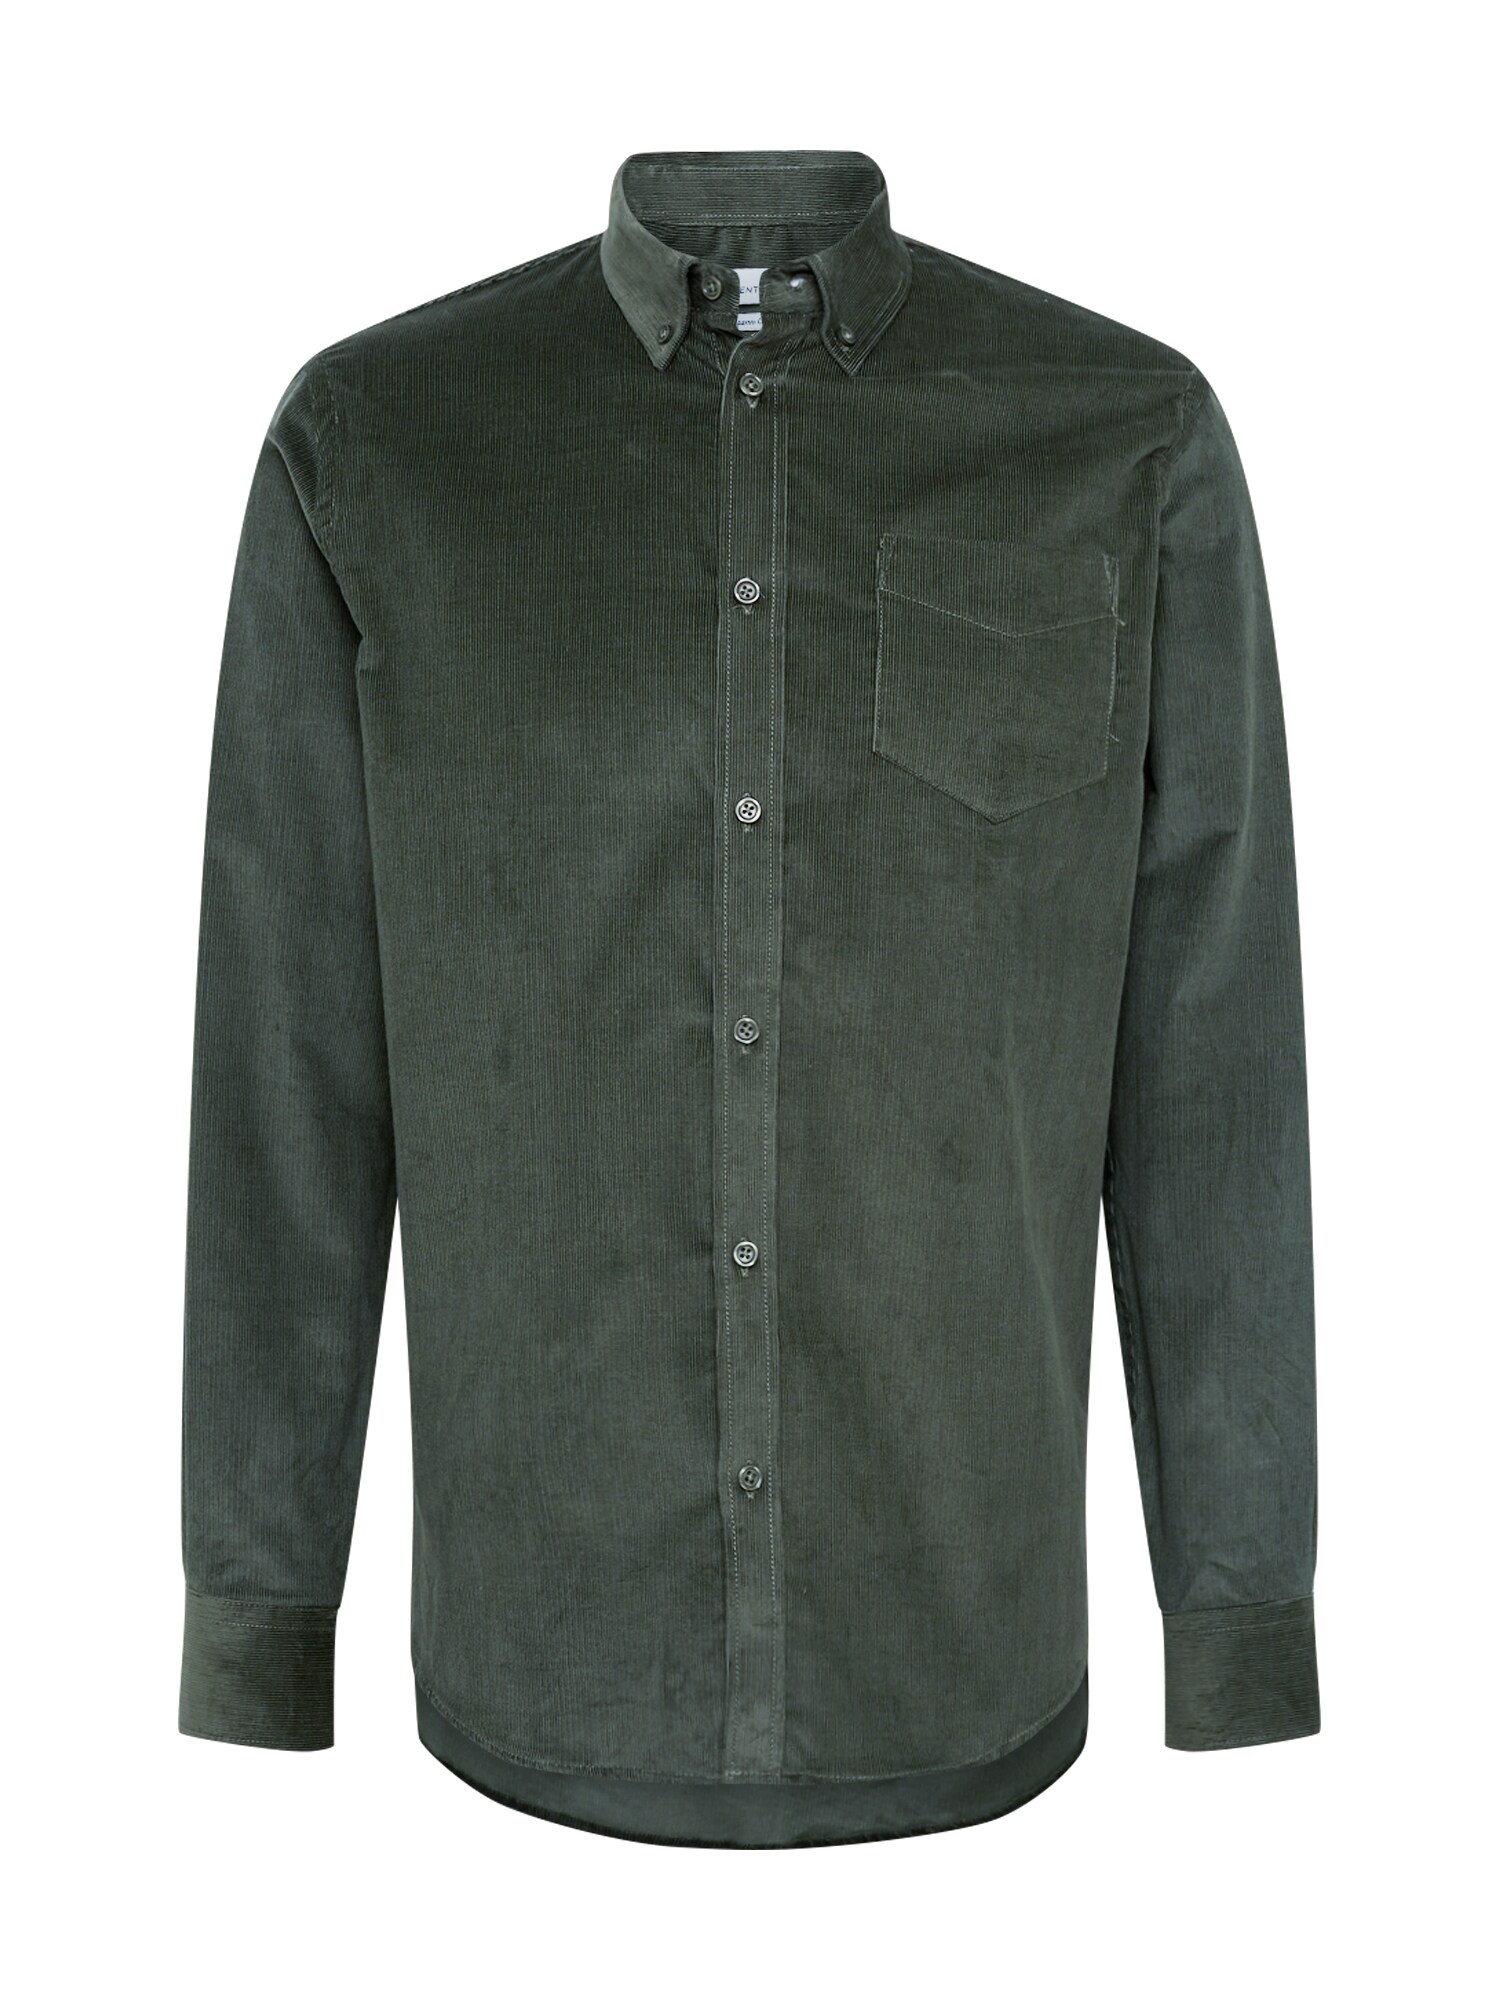 By Garment Makers Dalykiniai marškiniai  tamsiai žalia